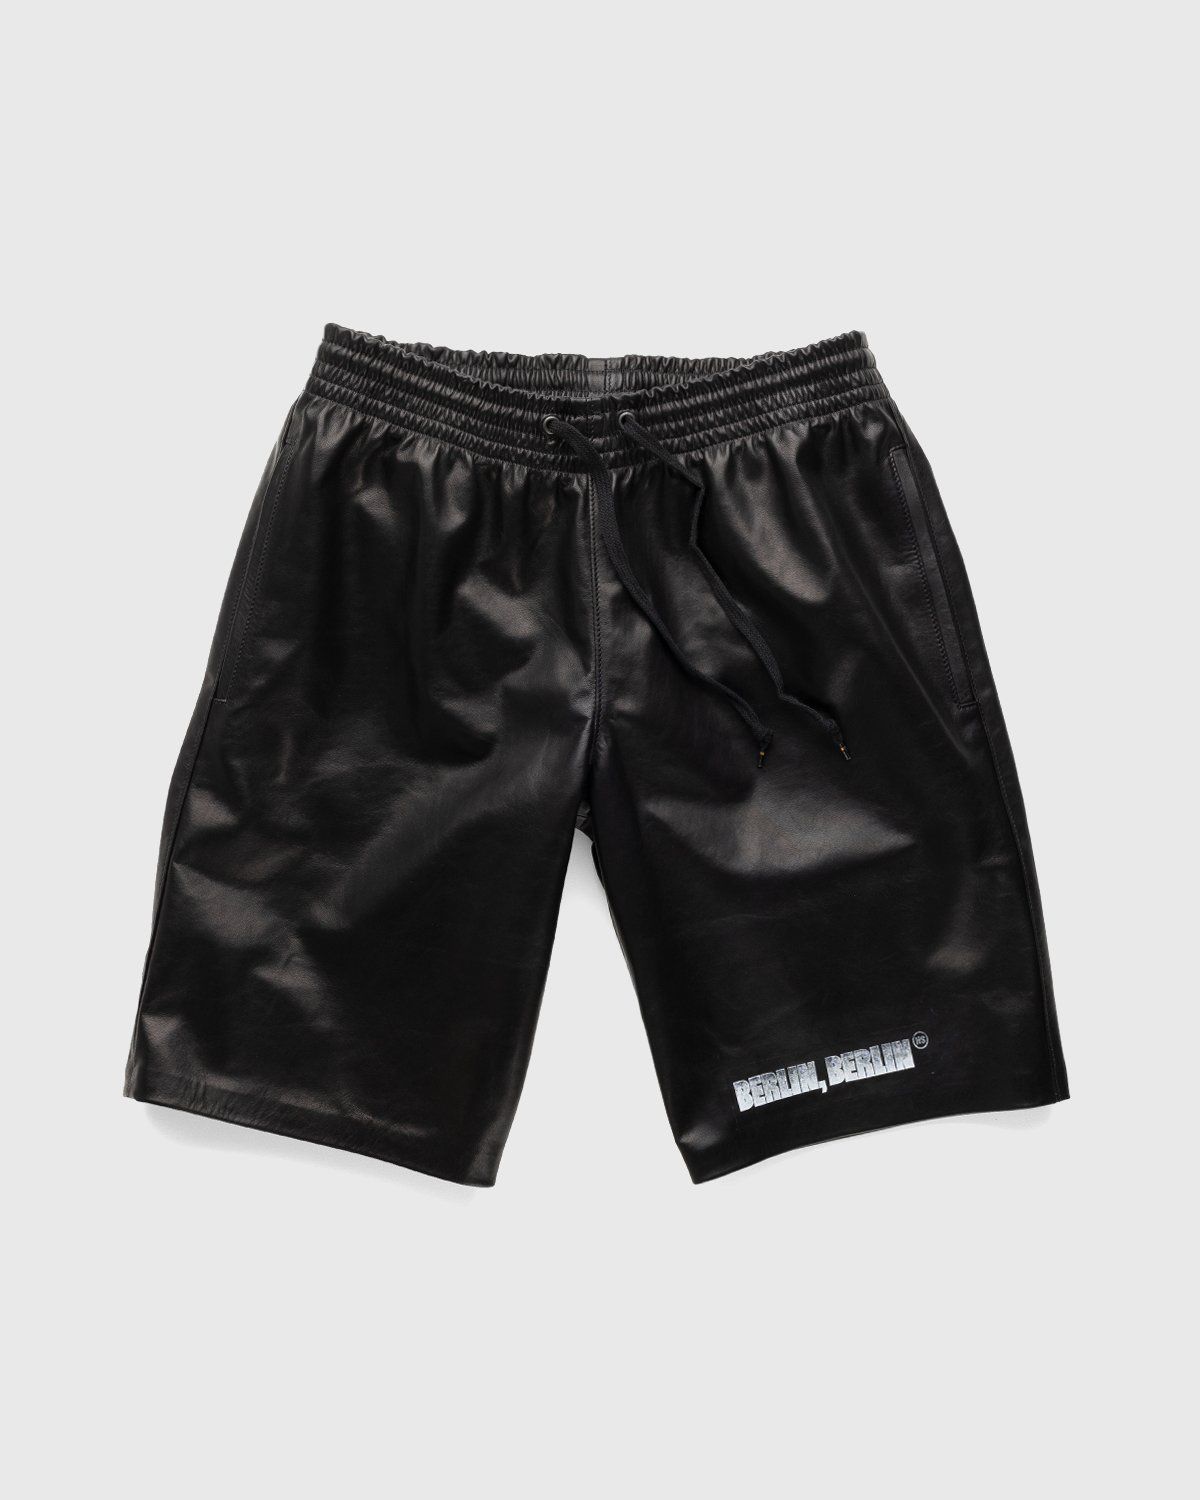 Highsnobiety x Butcherei Lindinger – Shorts Black | Highsnobiety Shop